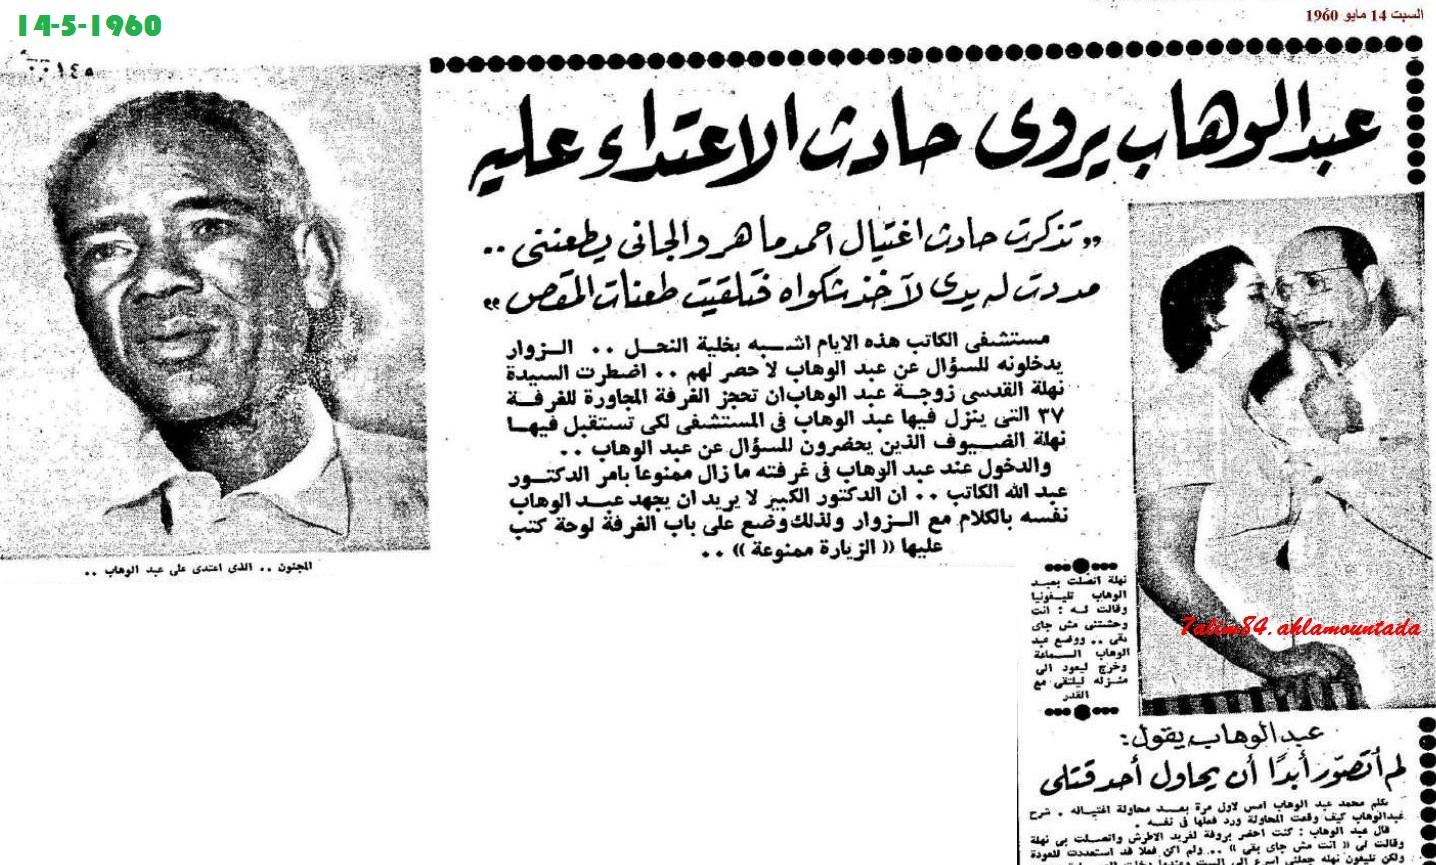 محاولة أغتيال الموسيقار عبد الوهاب 12 مايو 1960، هدية الى أستاذي الغالي مدحت عبد الدايم 880684837